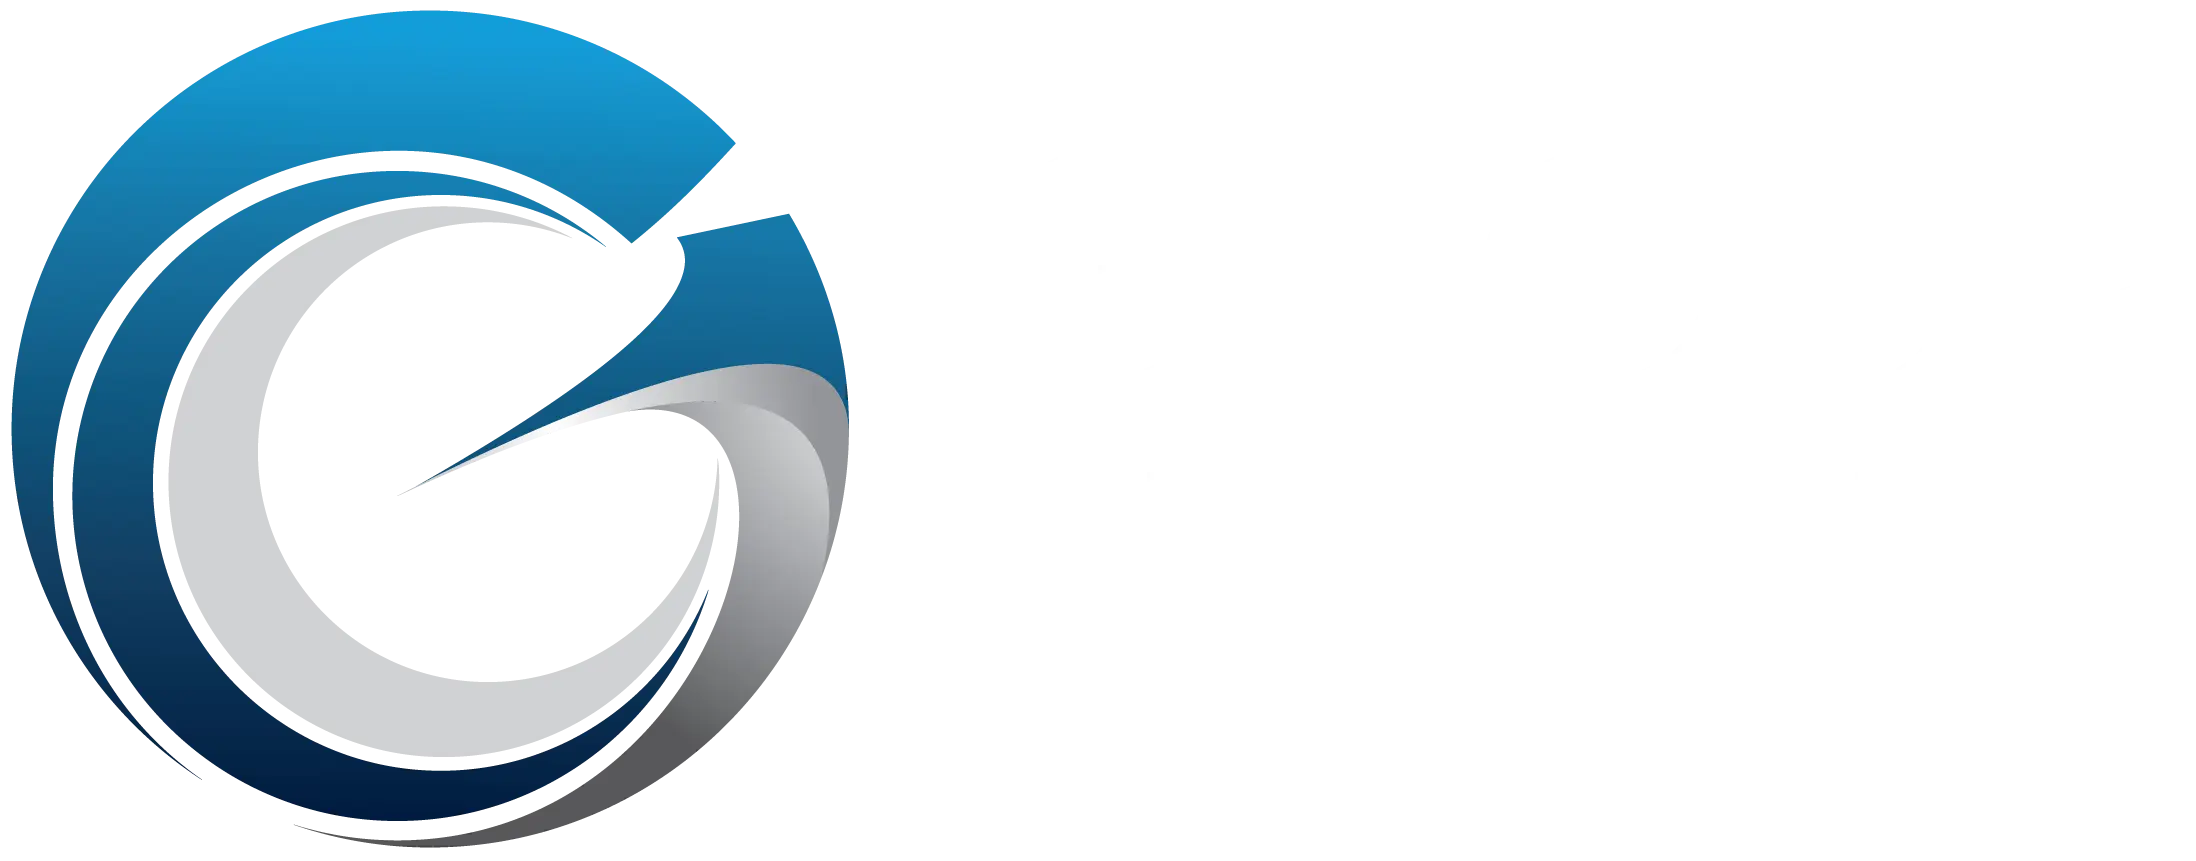 Group-Elite-logo-2020-upper left web